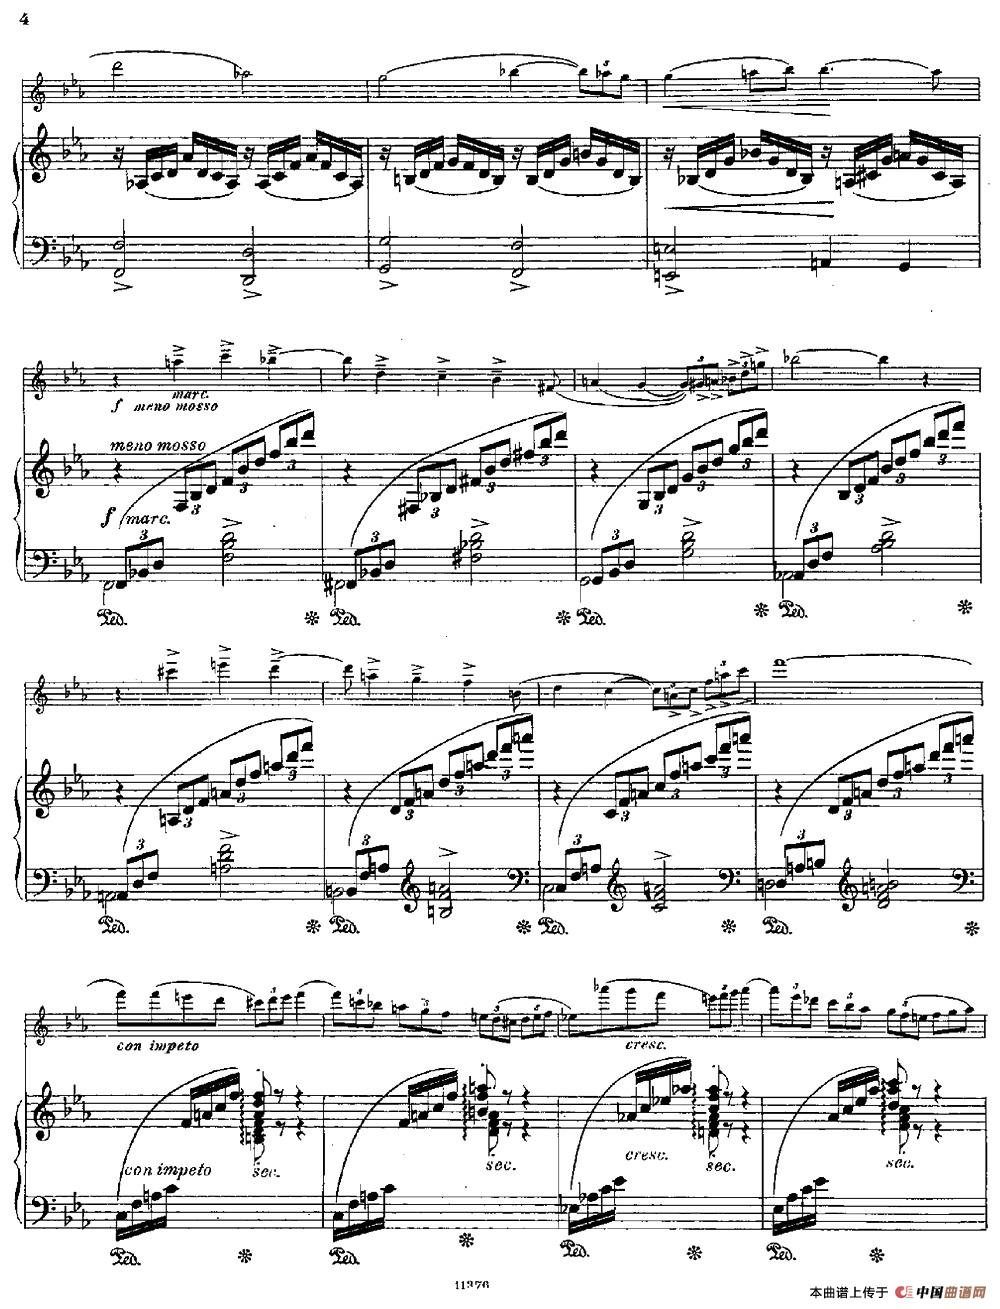 Le Calme（Op.57 No.1）（长笛+钢琴伴奏）